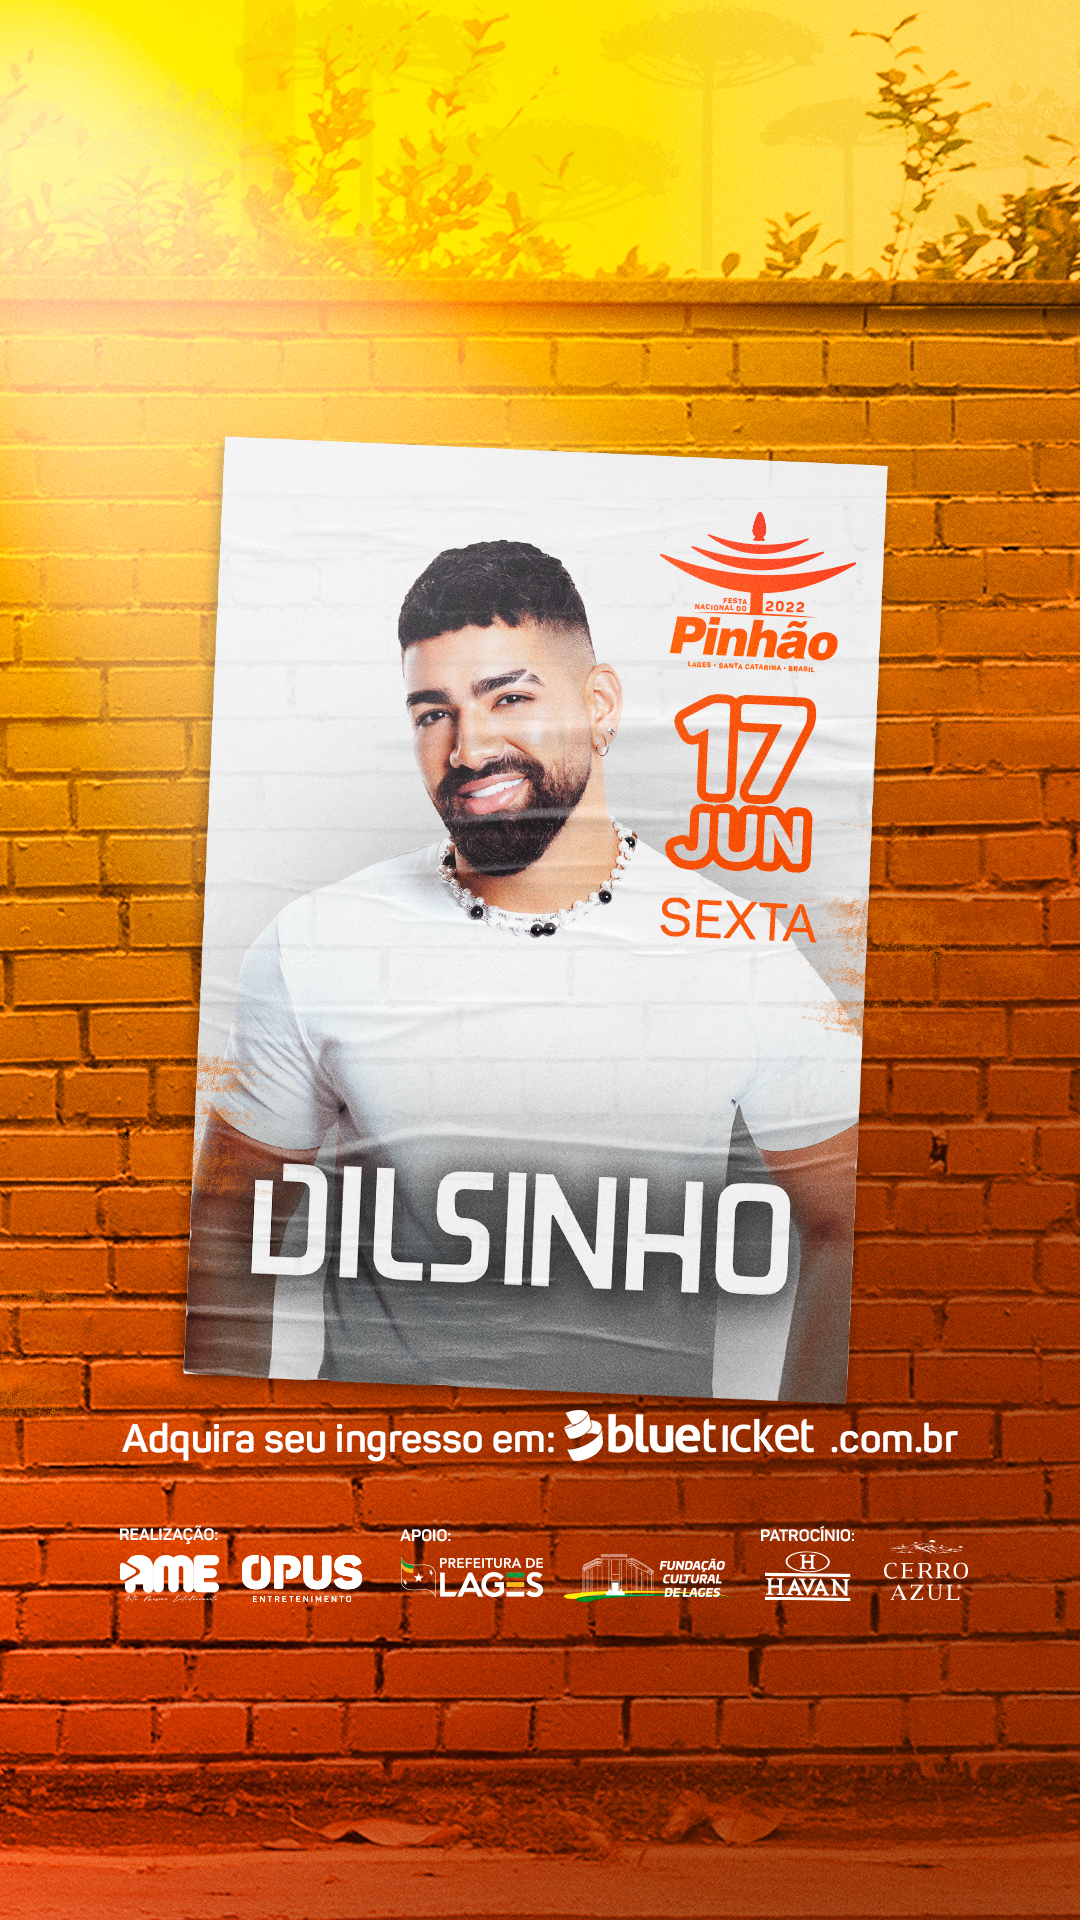 Dilsinho